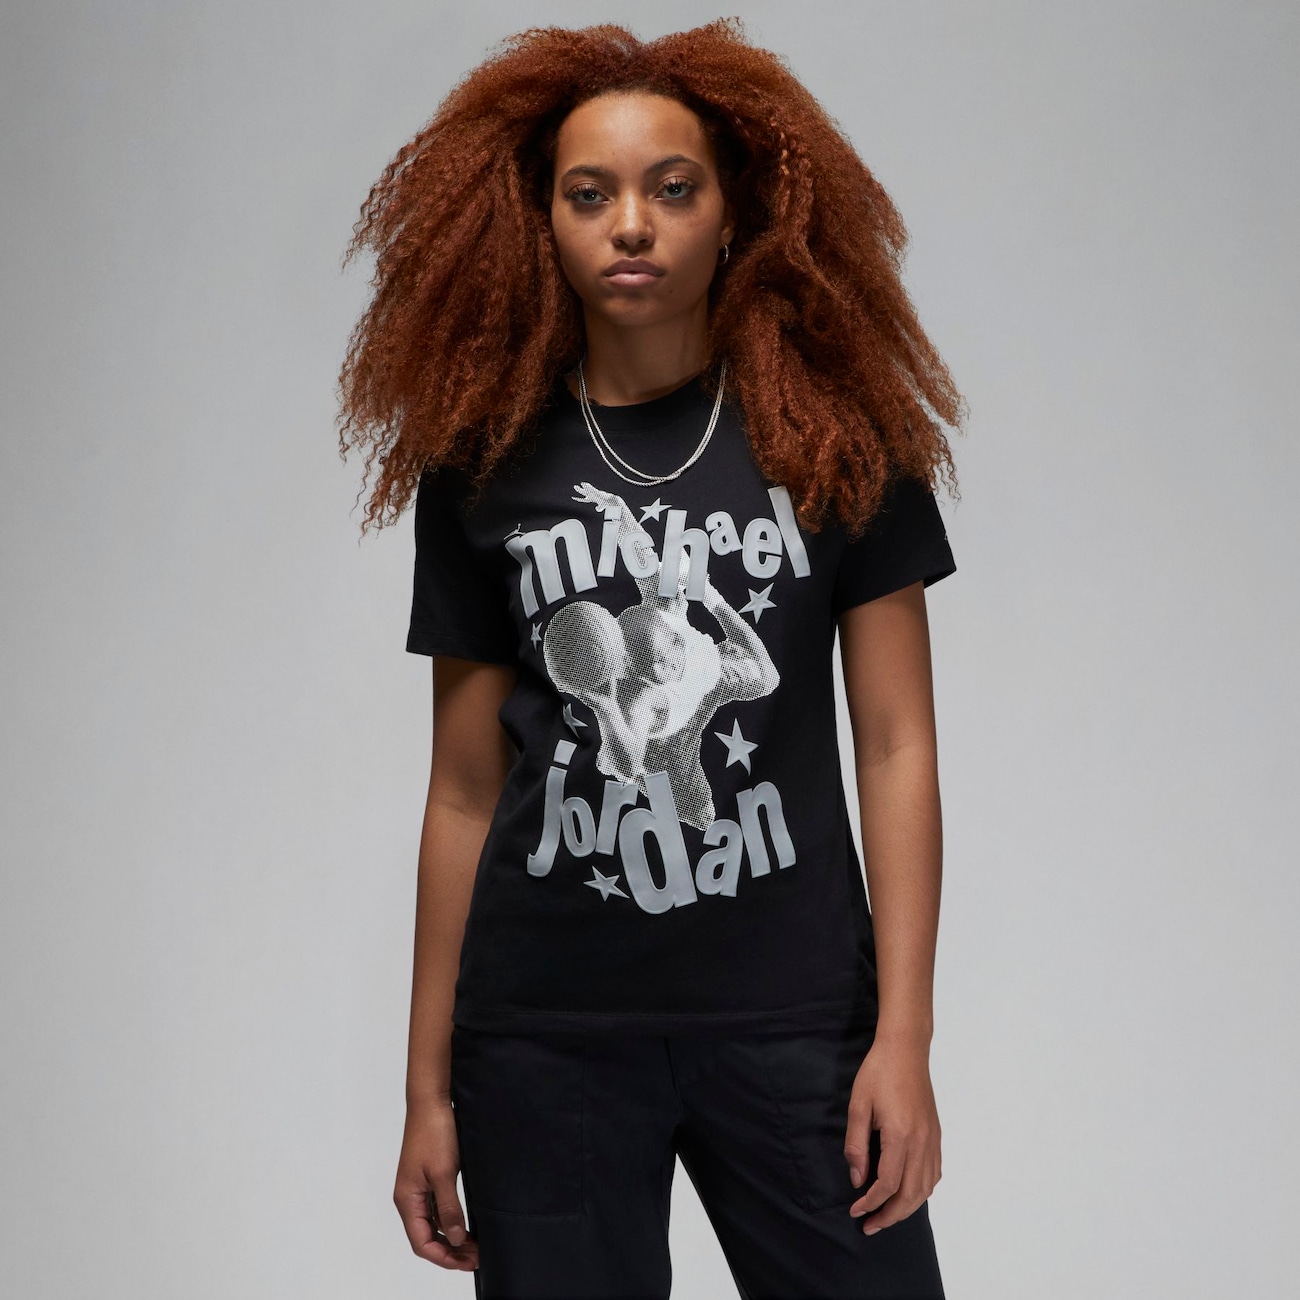 Jordan (Her)itage-T-shirt til kvinder - sort